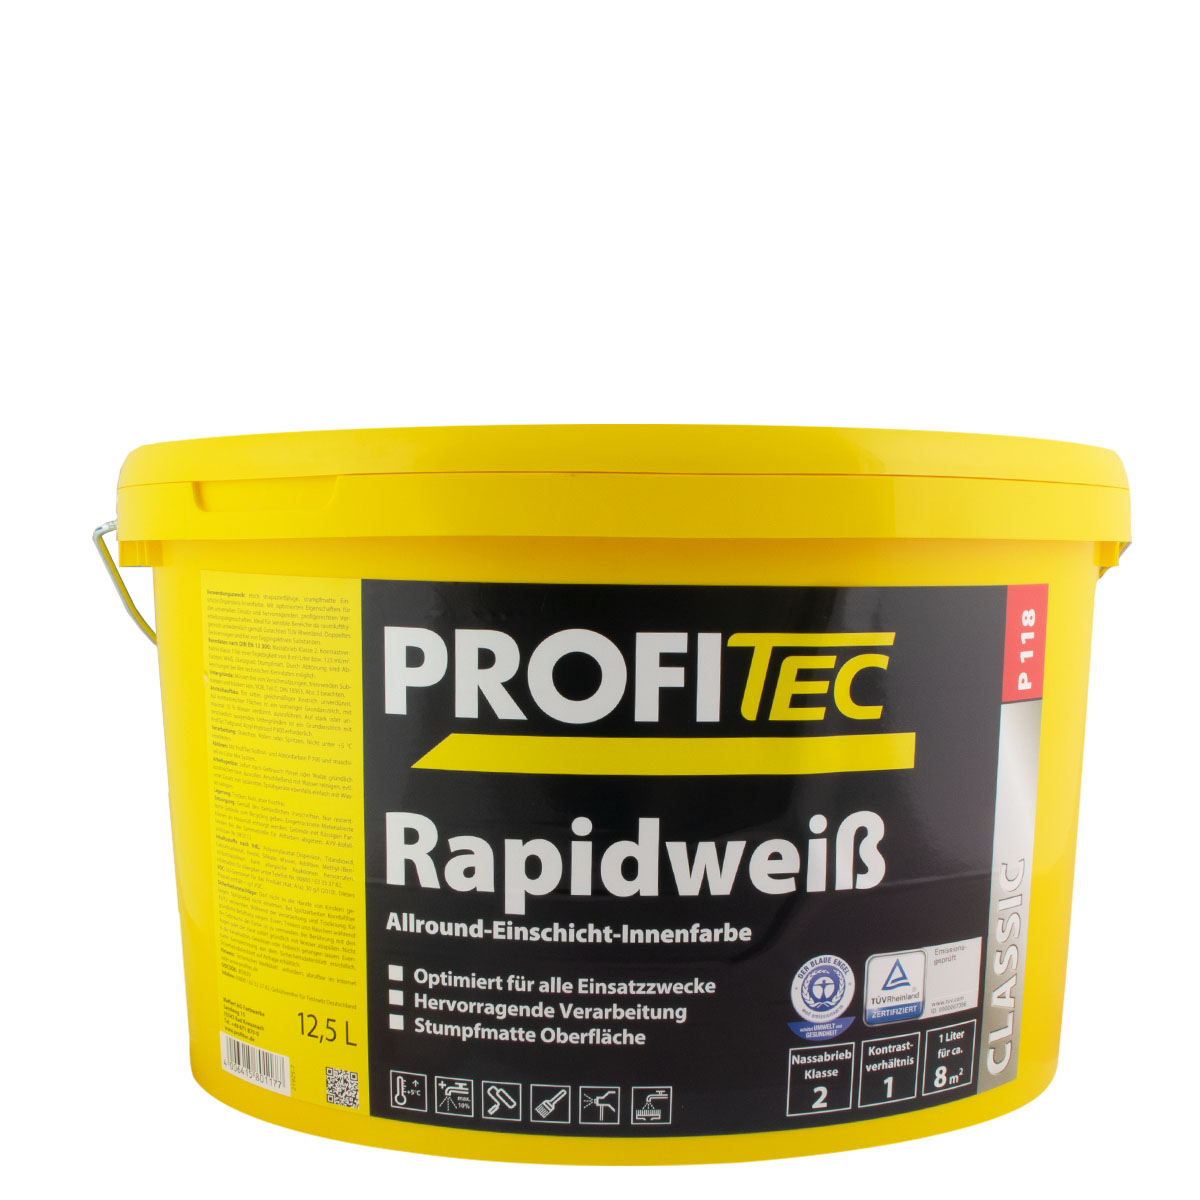 Profitec P118 Rapidweiß 12,5L, Einschicht Innenfarbe, weiß